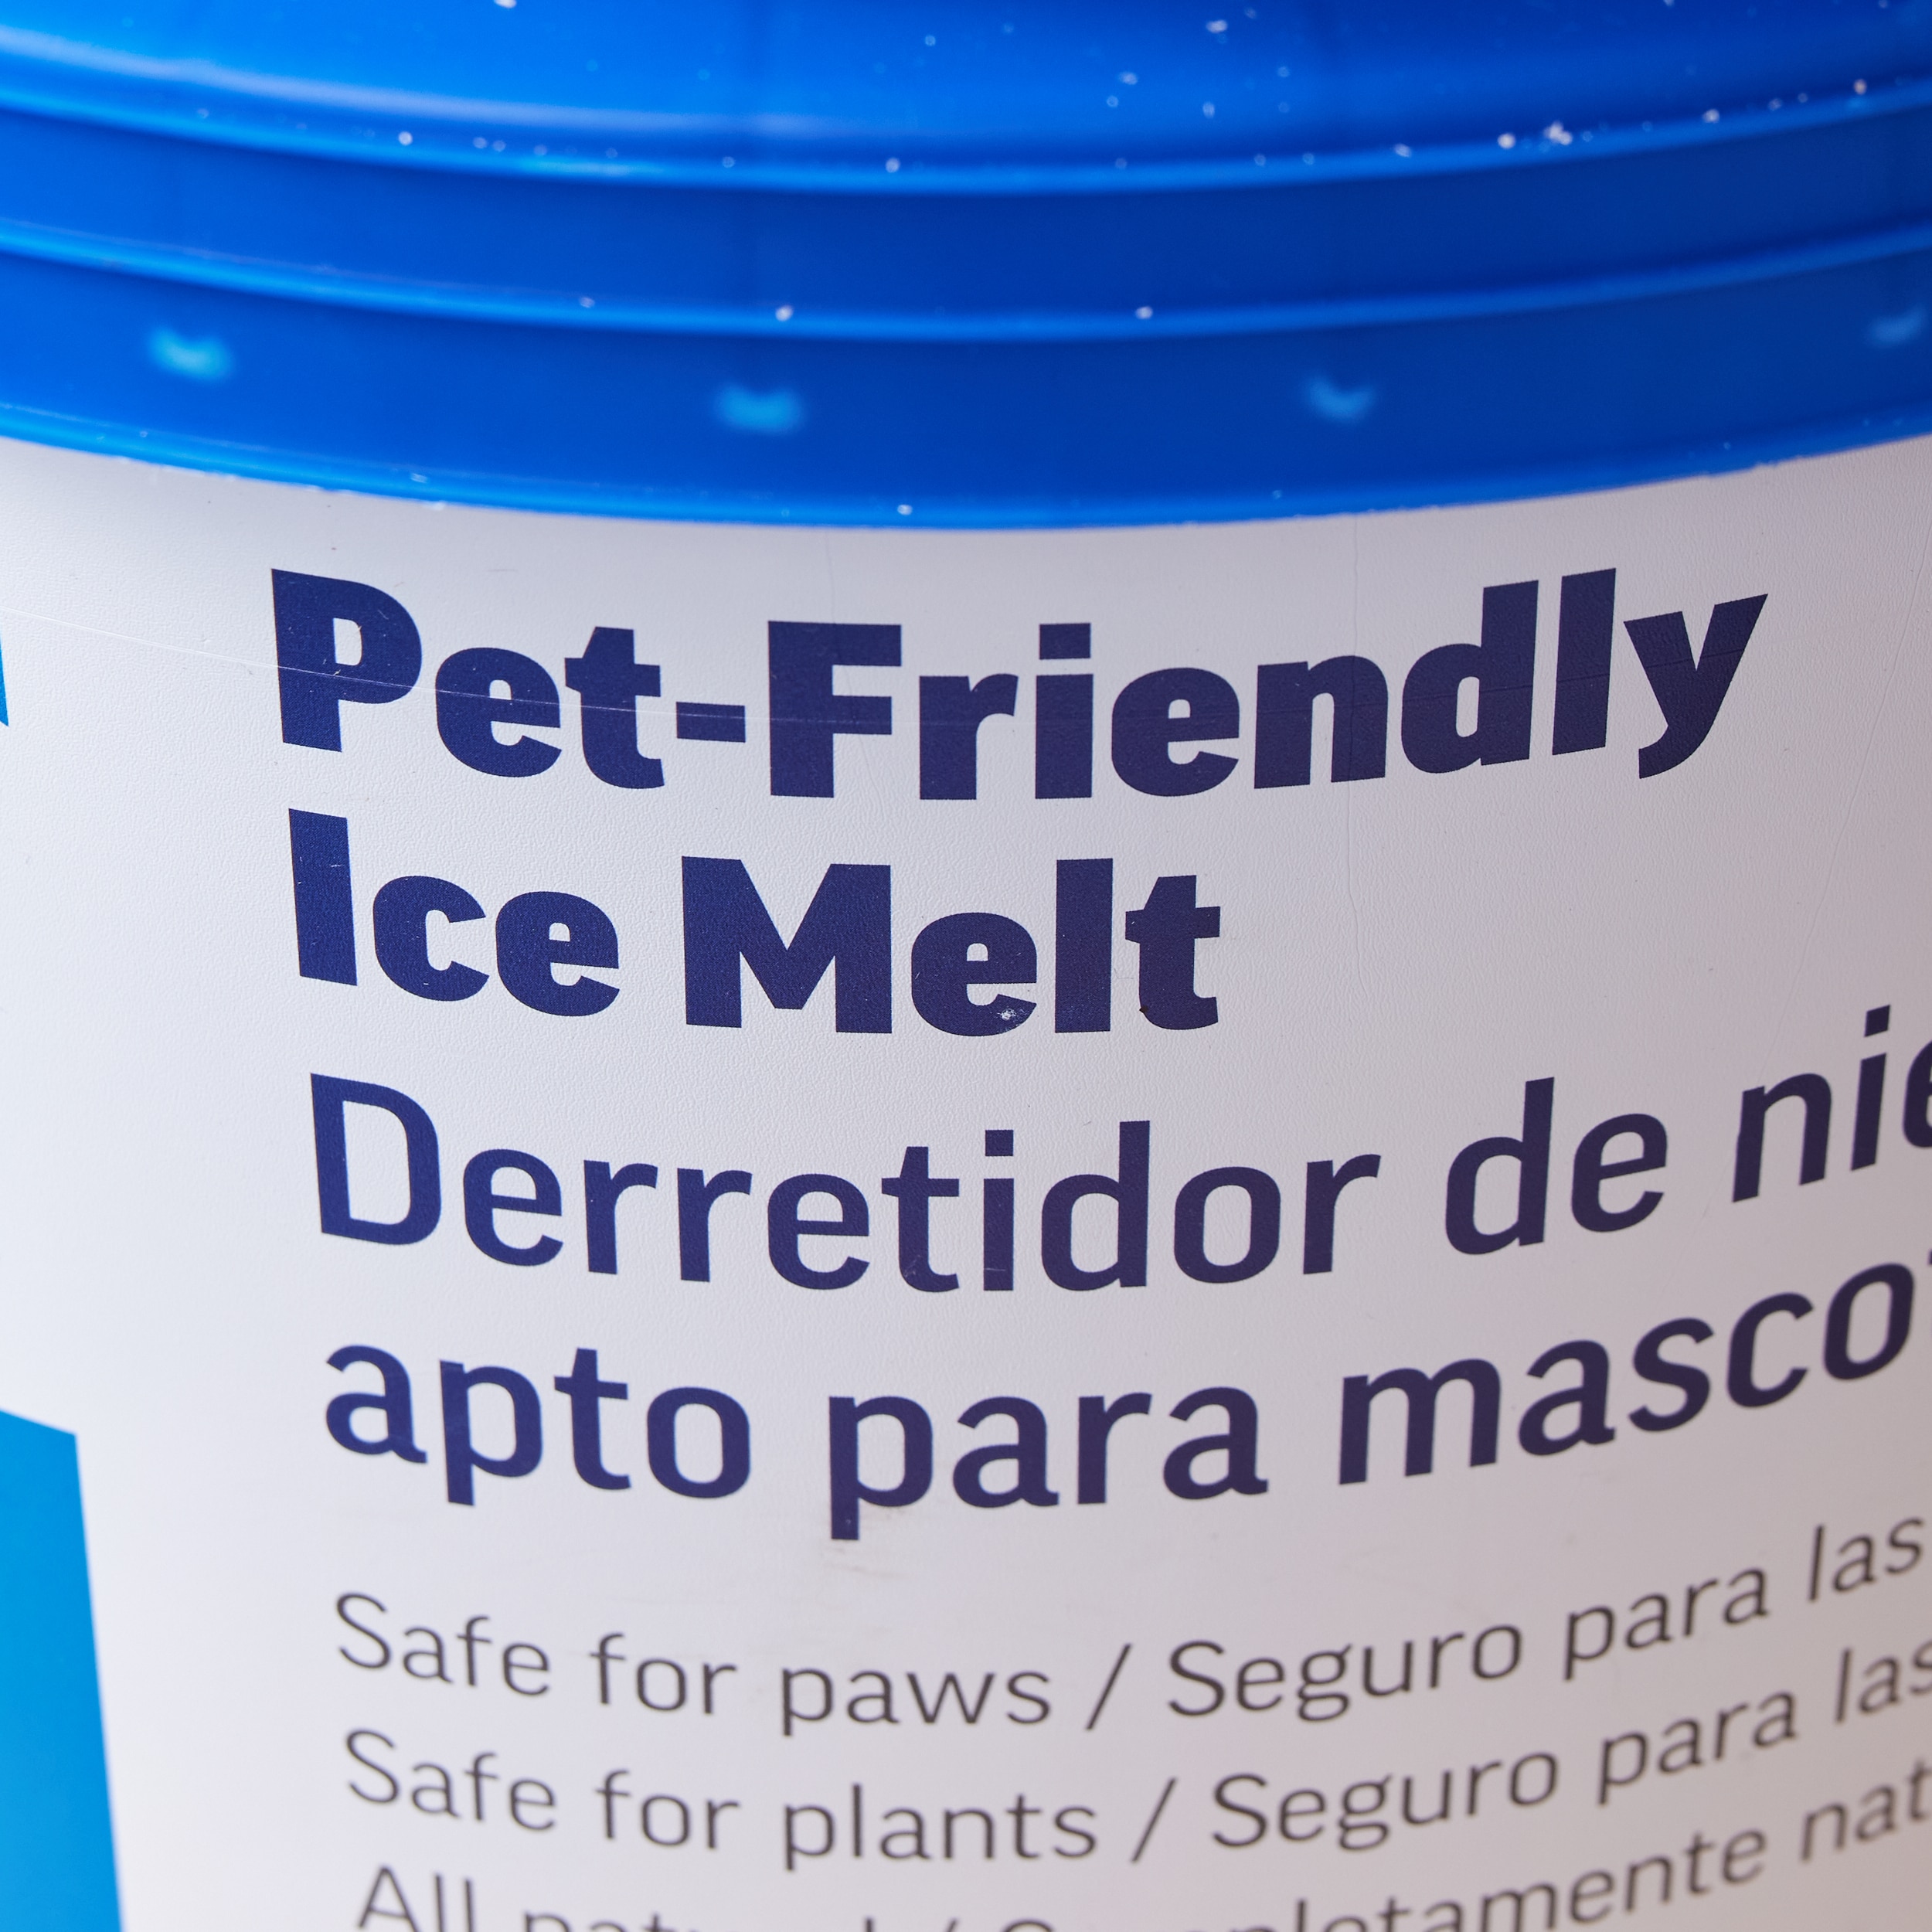 Safe Paw Pet Friendly Concrete Safe Salt Free Ice Melt Pellets, 35 Pound  Pail, 1 Piece - Kroger